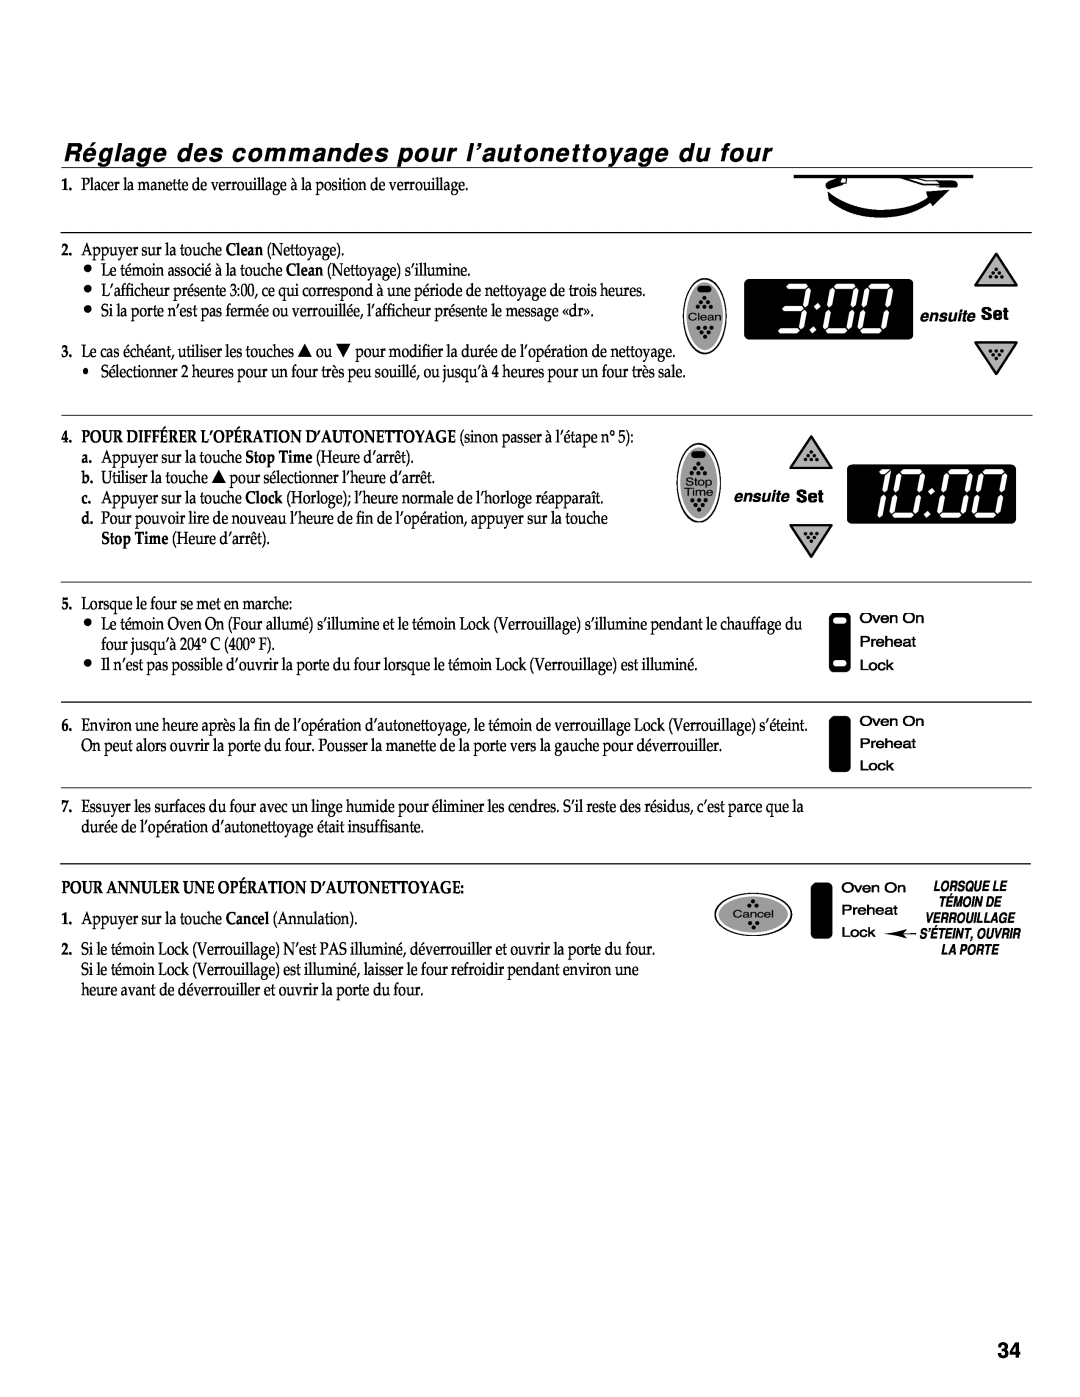 Maytag RS-1 manual Réglage des commandes pour l’autonettoyage du four, Pour Annuler Une Opération D’Autonettoyage 